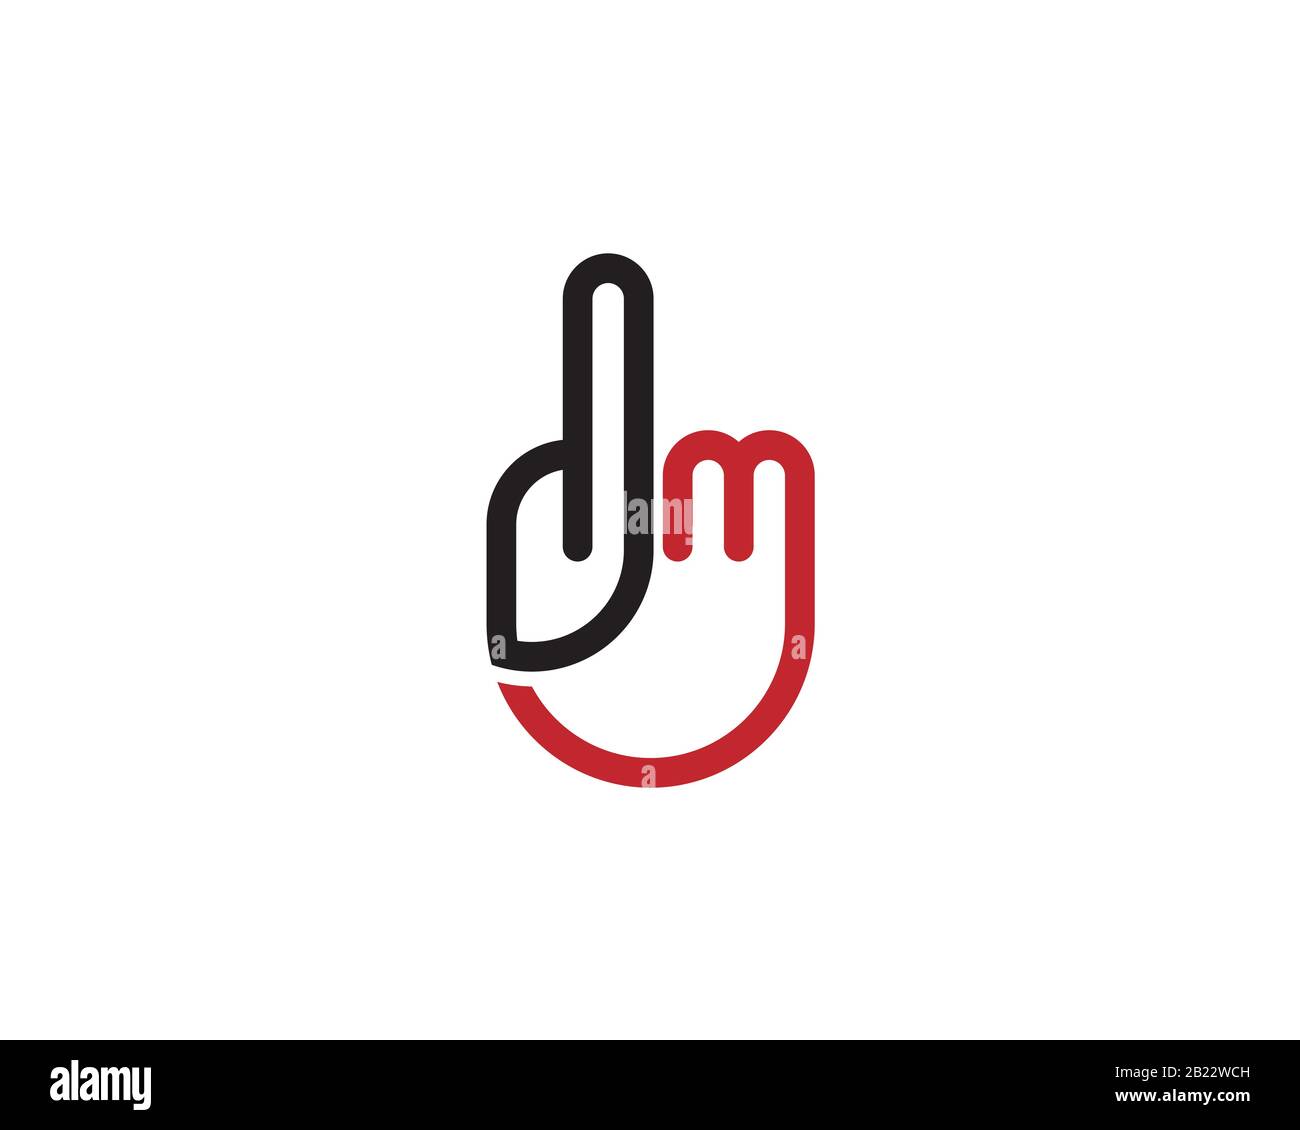 hand shape monogram anagram lettermark logo of letter D M Stock Vector